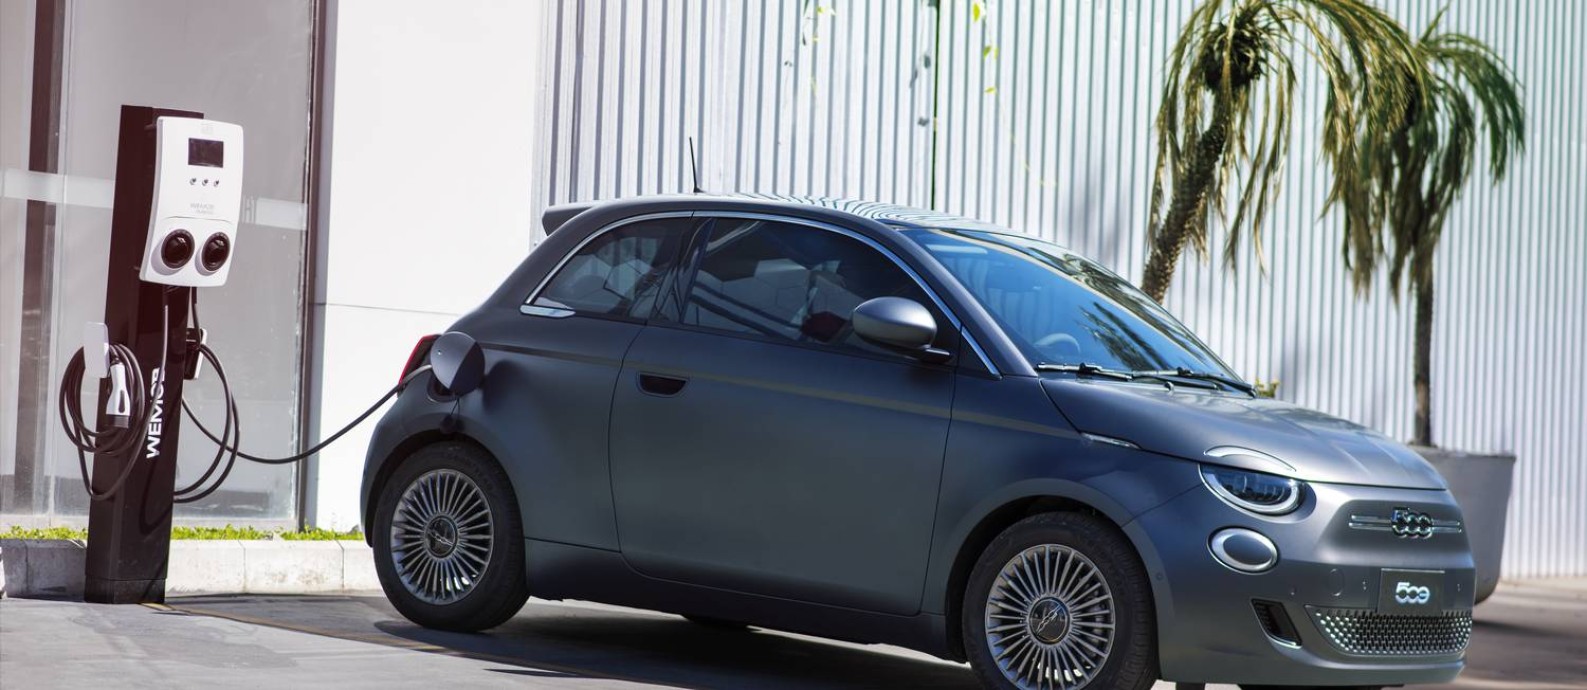 O Fiat 500e: versão elétrica do clássico. Stellantis vai investir 30 bilhões de euros em eletrificação e conectividade Foto: Rafa Paixão / Divulgação/Stellantis